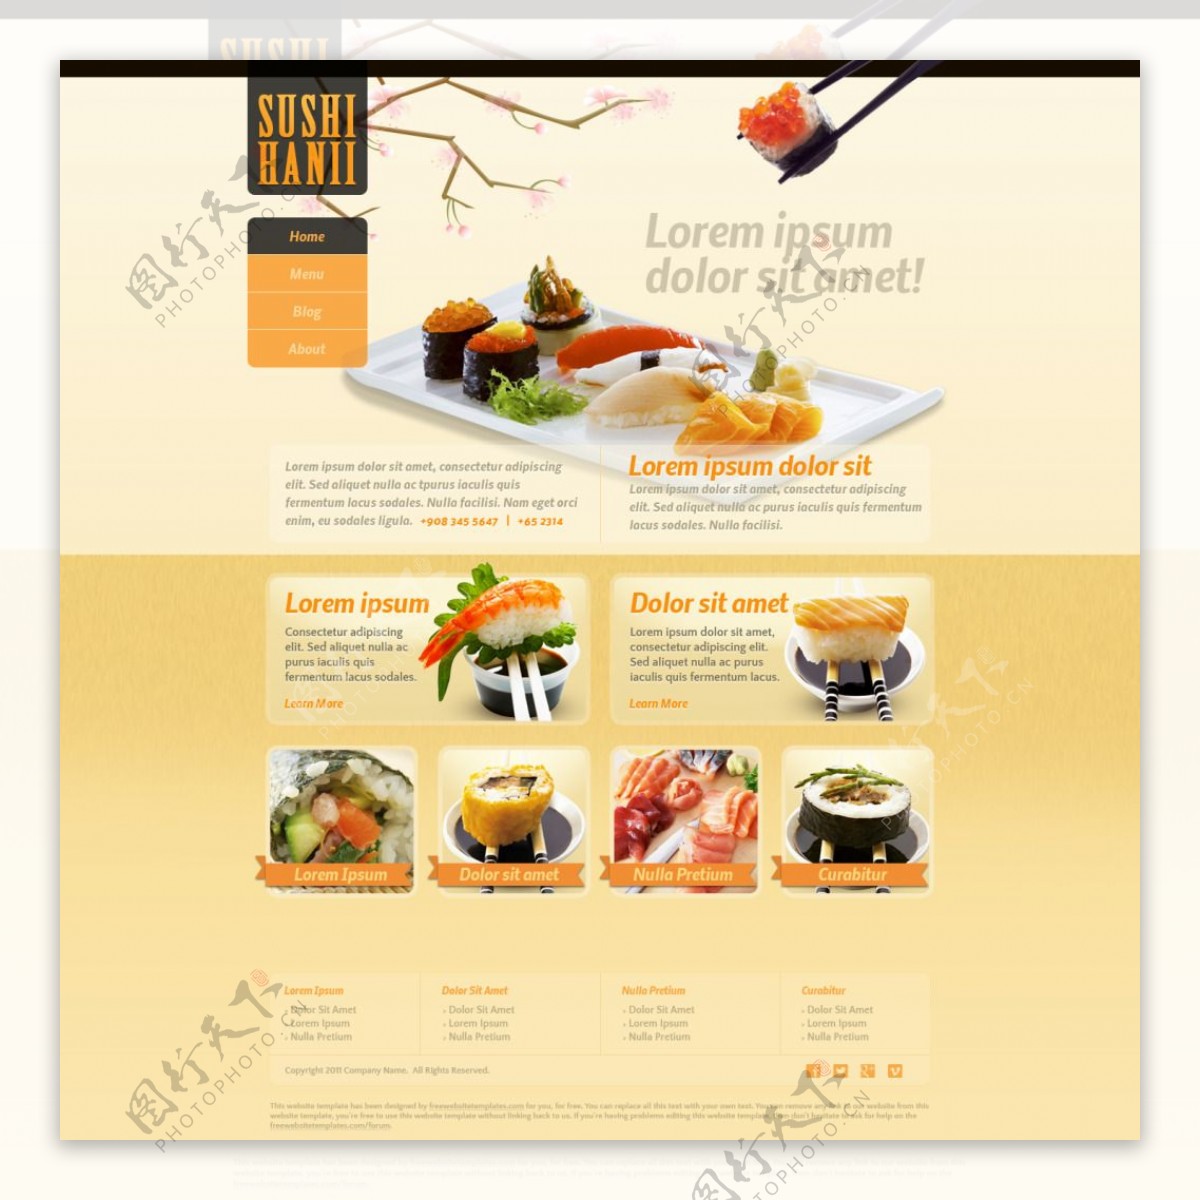 美食行业韩国寿司网页设计模版素材psd